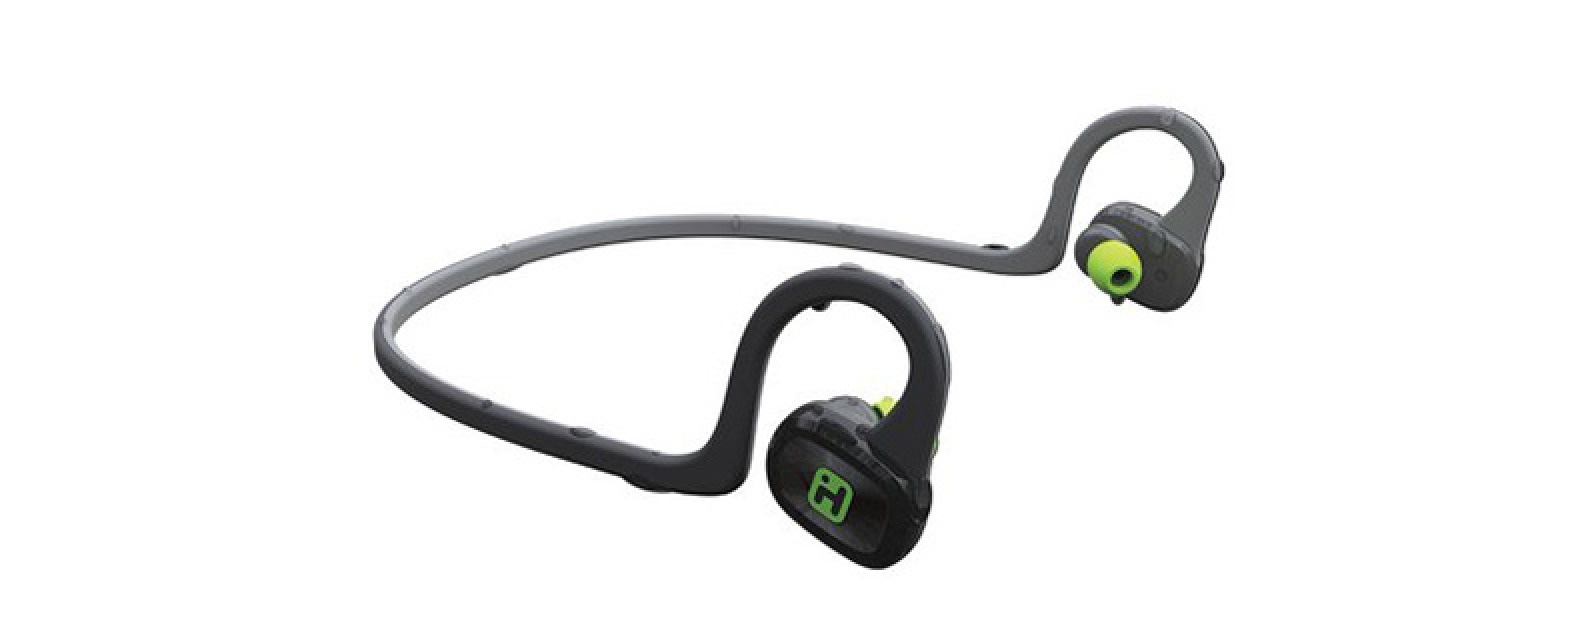 Revisión de auriculares inalámbricos: Auriculares deportivos iHome Bluetooth Revisión de auriculares inalámbricos: Auriculares deportivos iHome Bluetooth